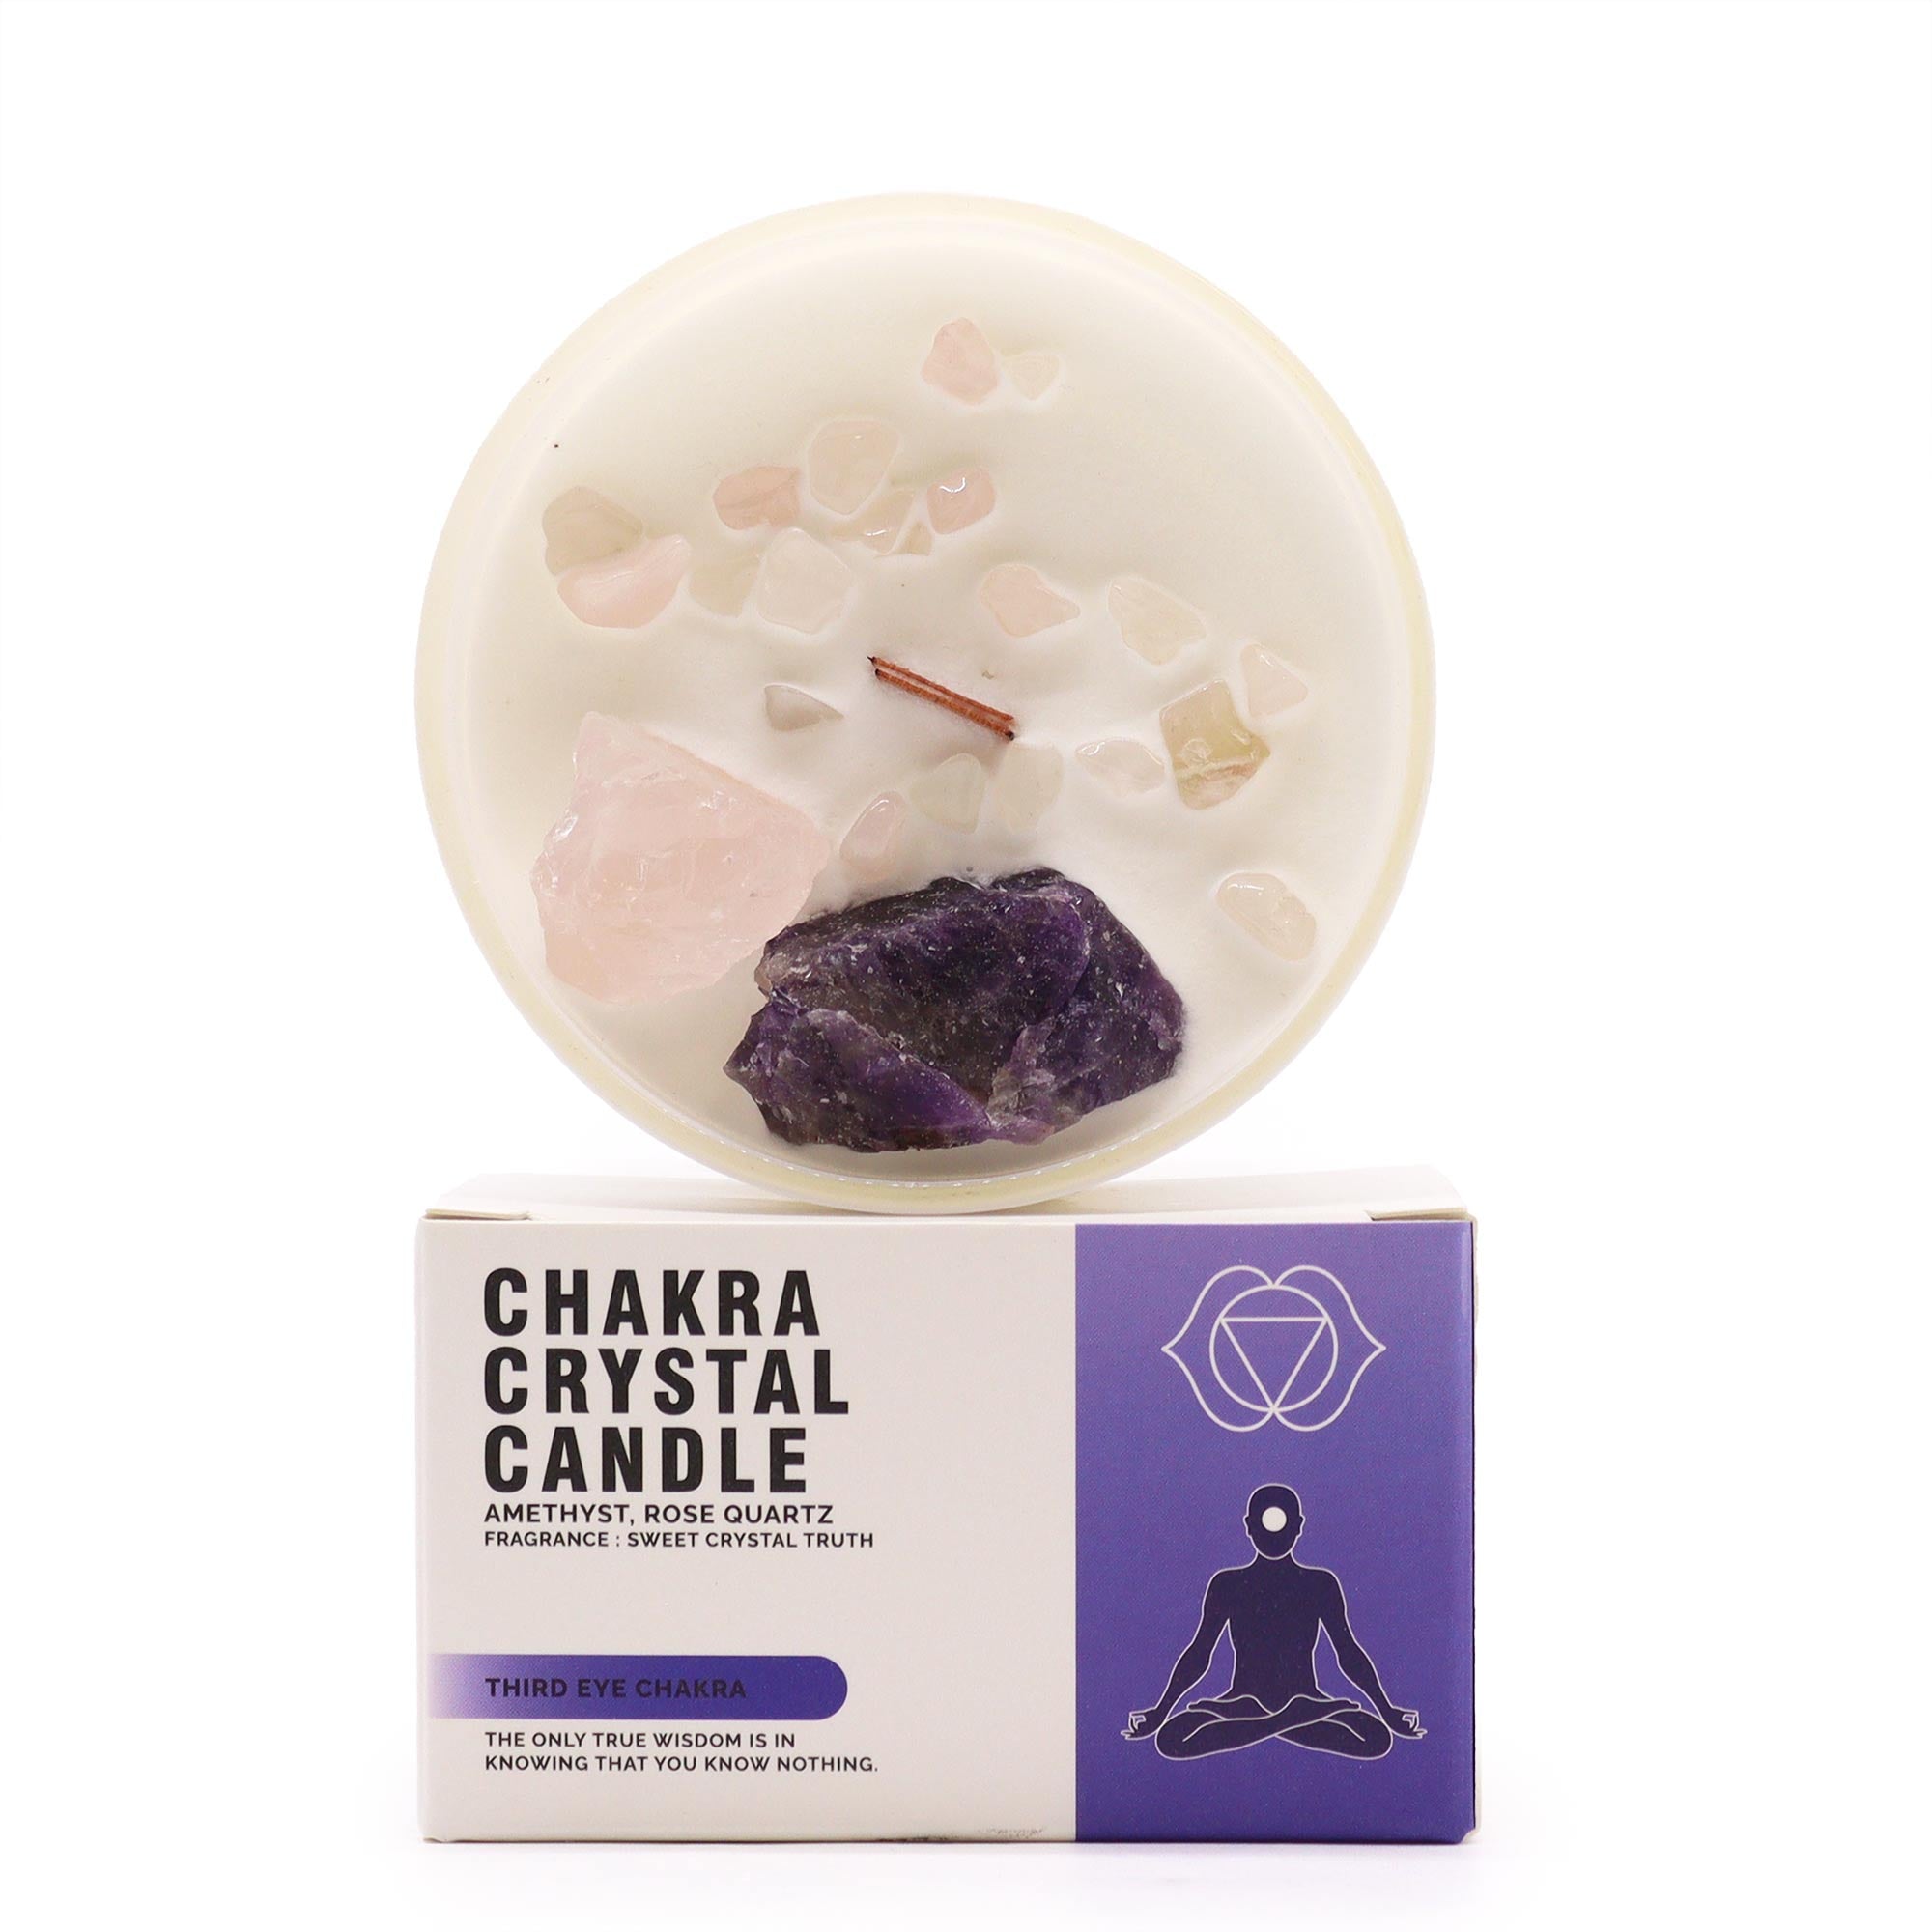 View Chakra Crystal Candles Third Eye Chakra information